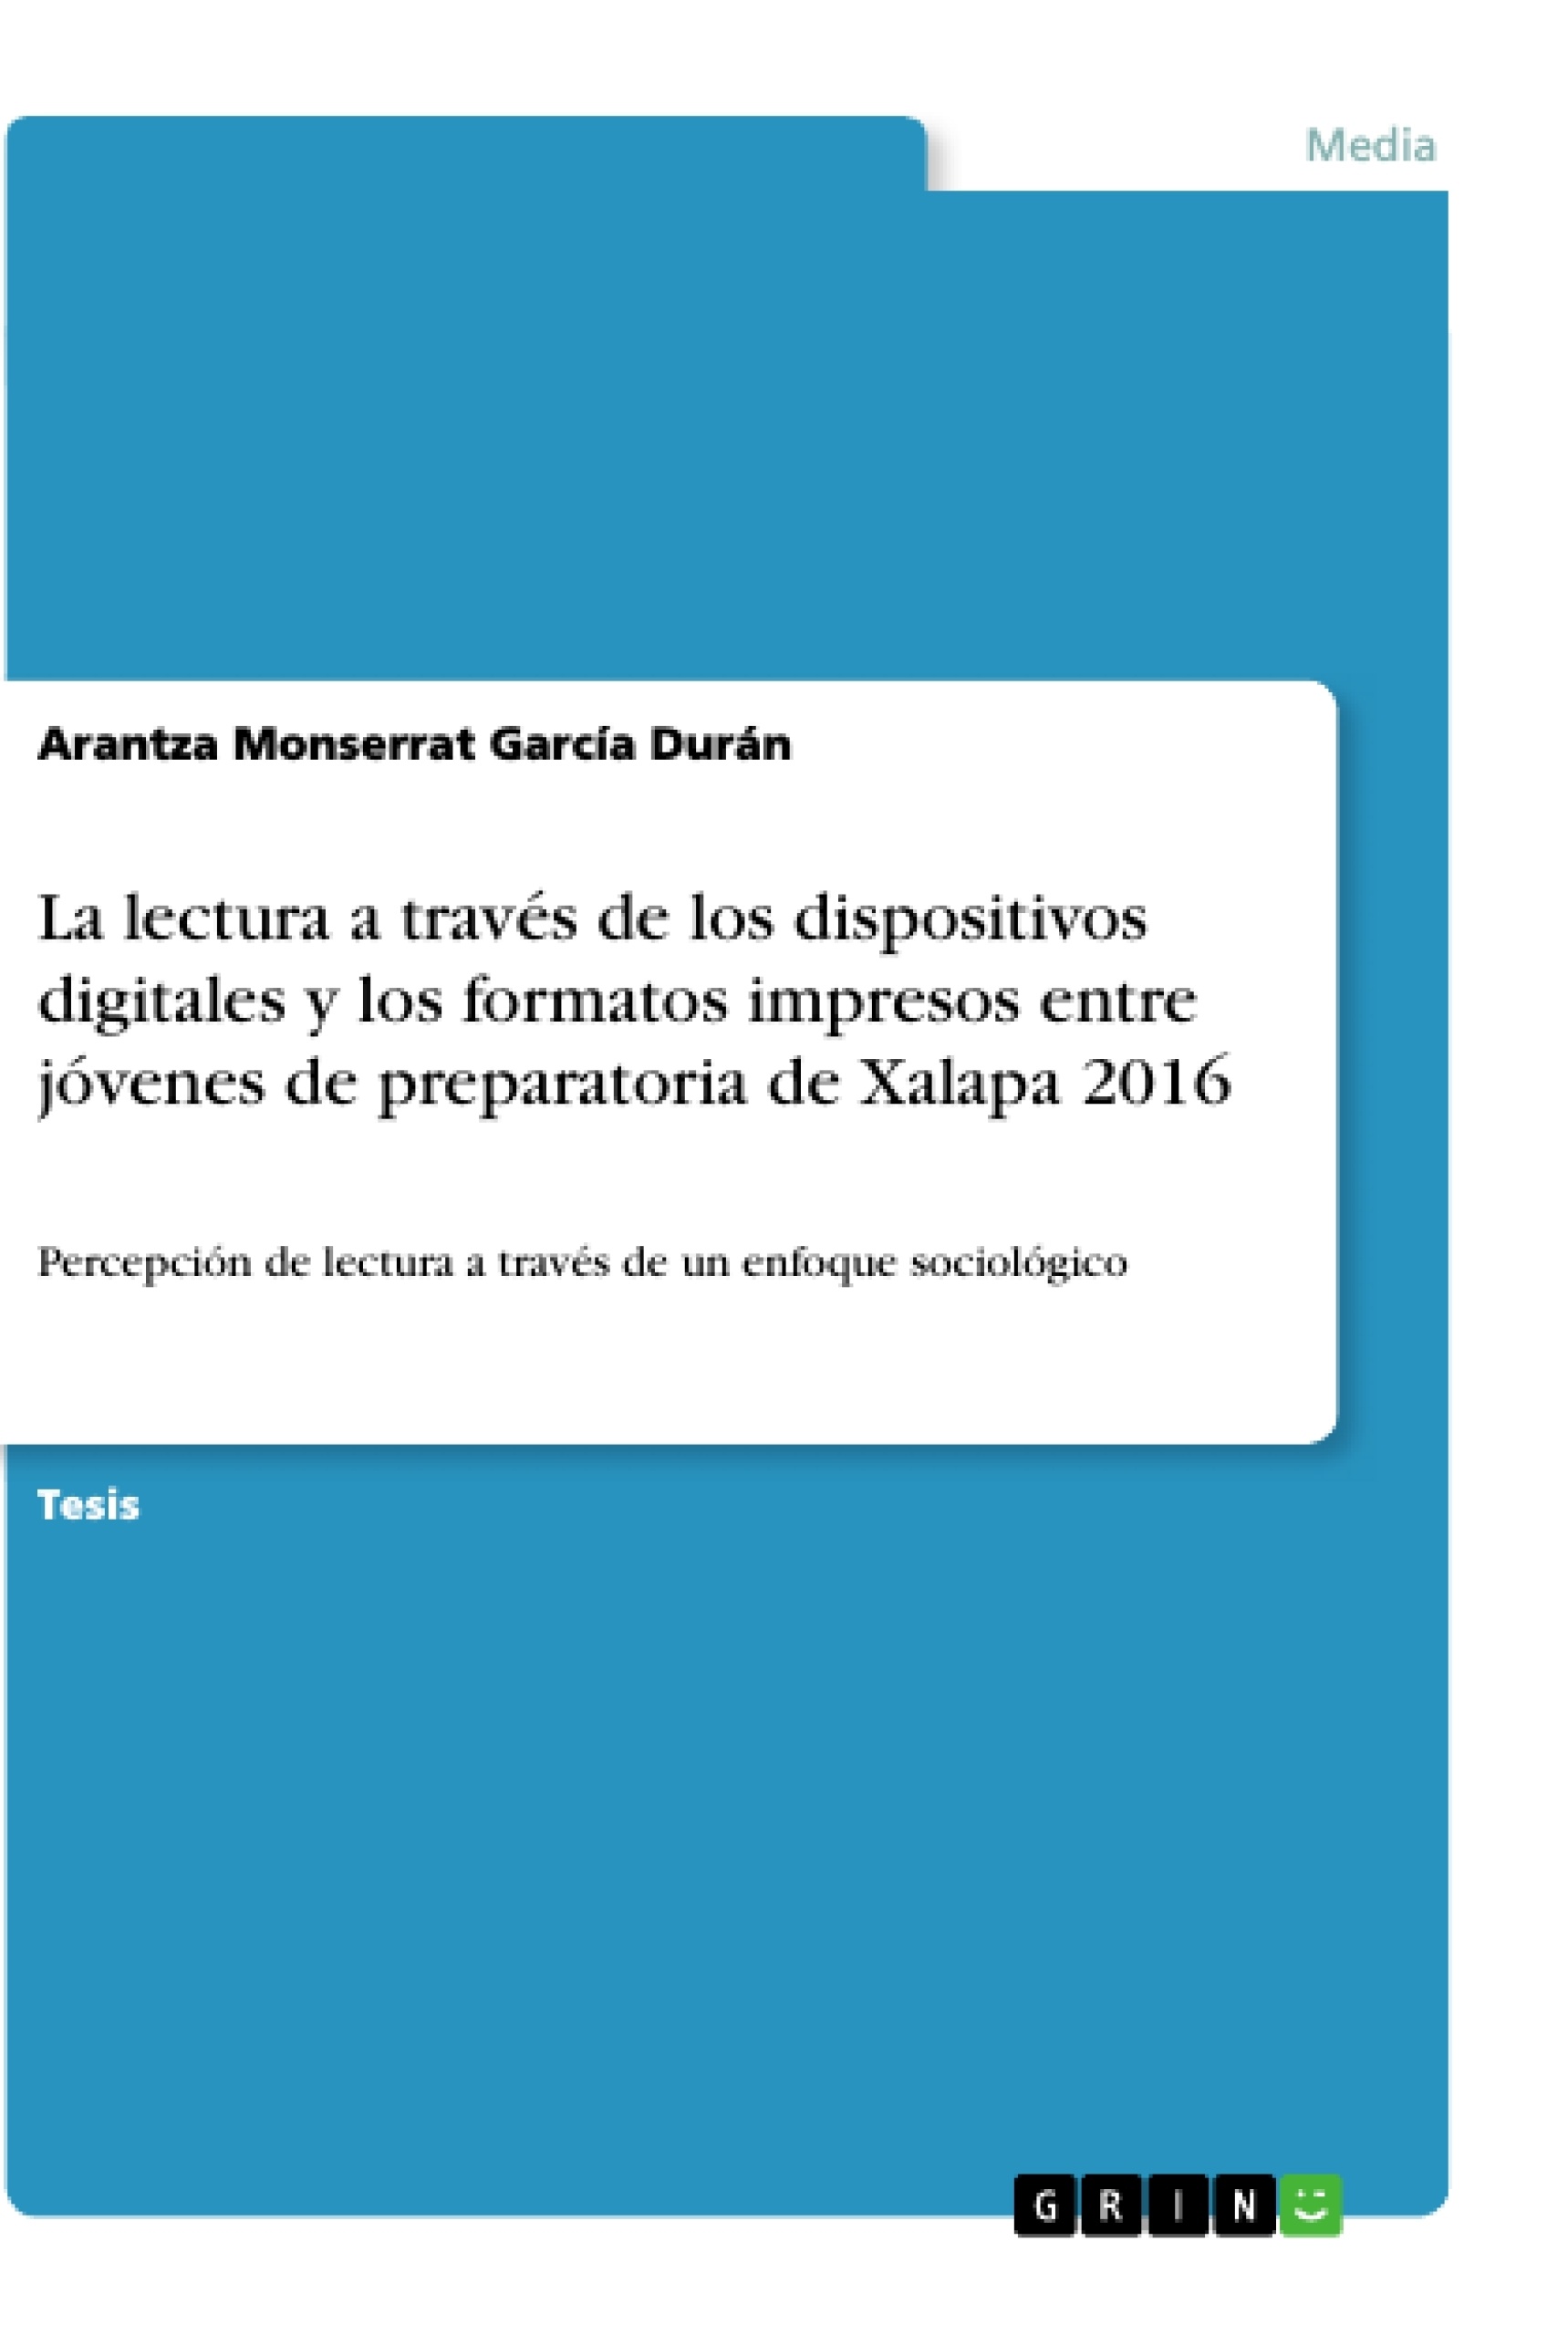 Título: La lectura a través de los dispositivos digitales y los formatos impresos entre jóvenes de preparatoria de Xalapa 2016